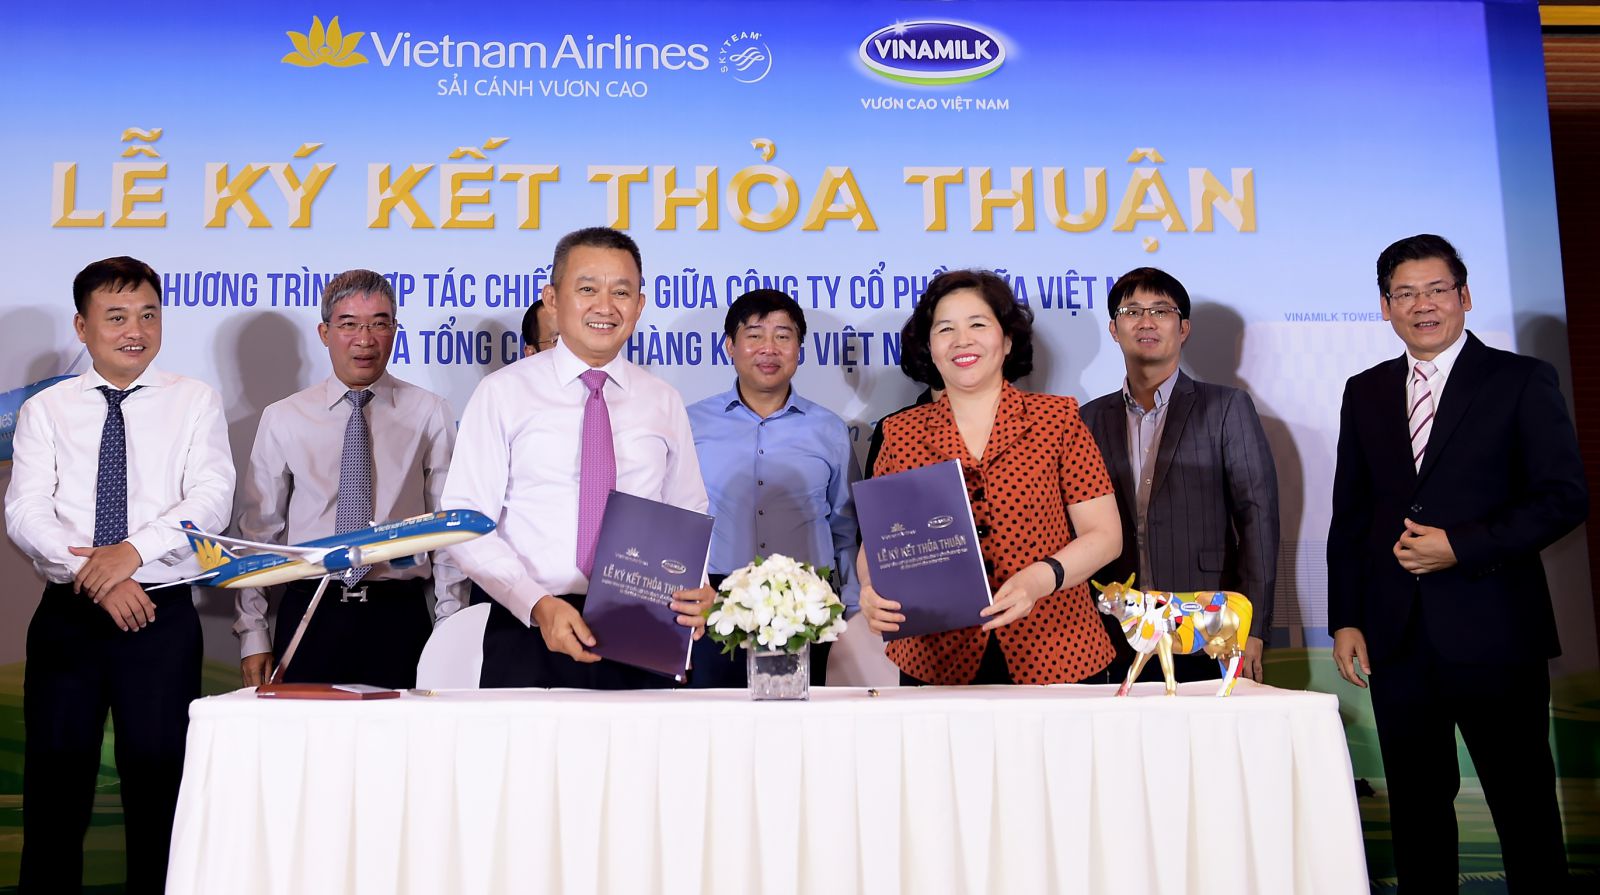 Ông Dương Trí Thành - Tổng Giám đốc Vietnam Airlines (trái) và bà Mai Kiều Liên - Tổng Giám đốc Vinamilk (phải) trao thỏa thuận hợp tác chiến lược.